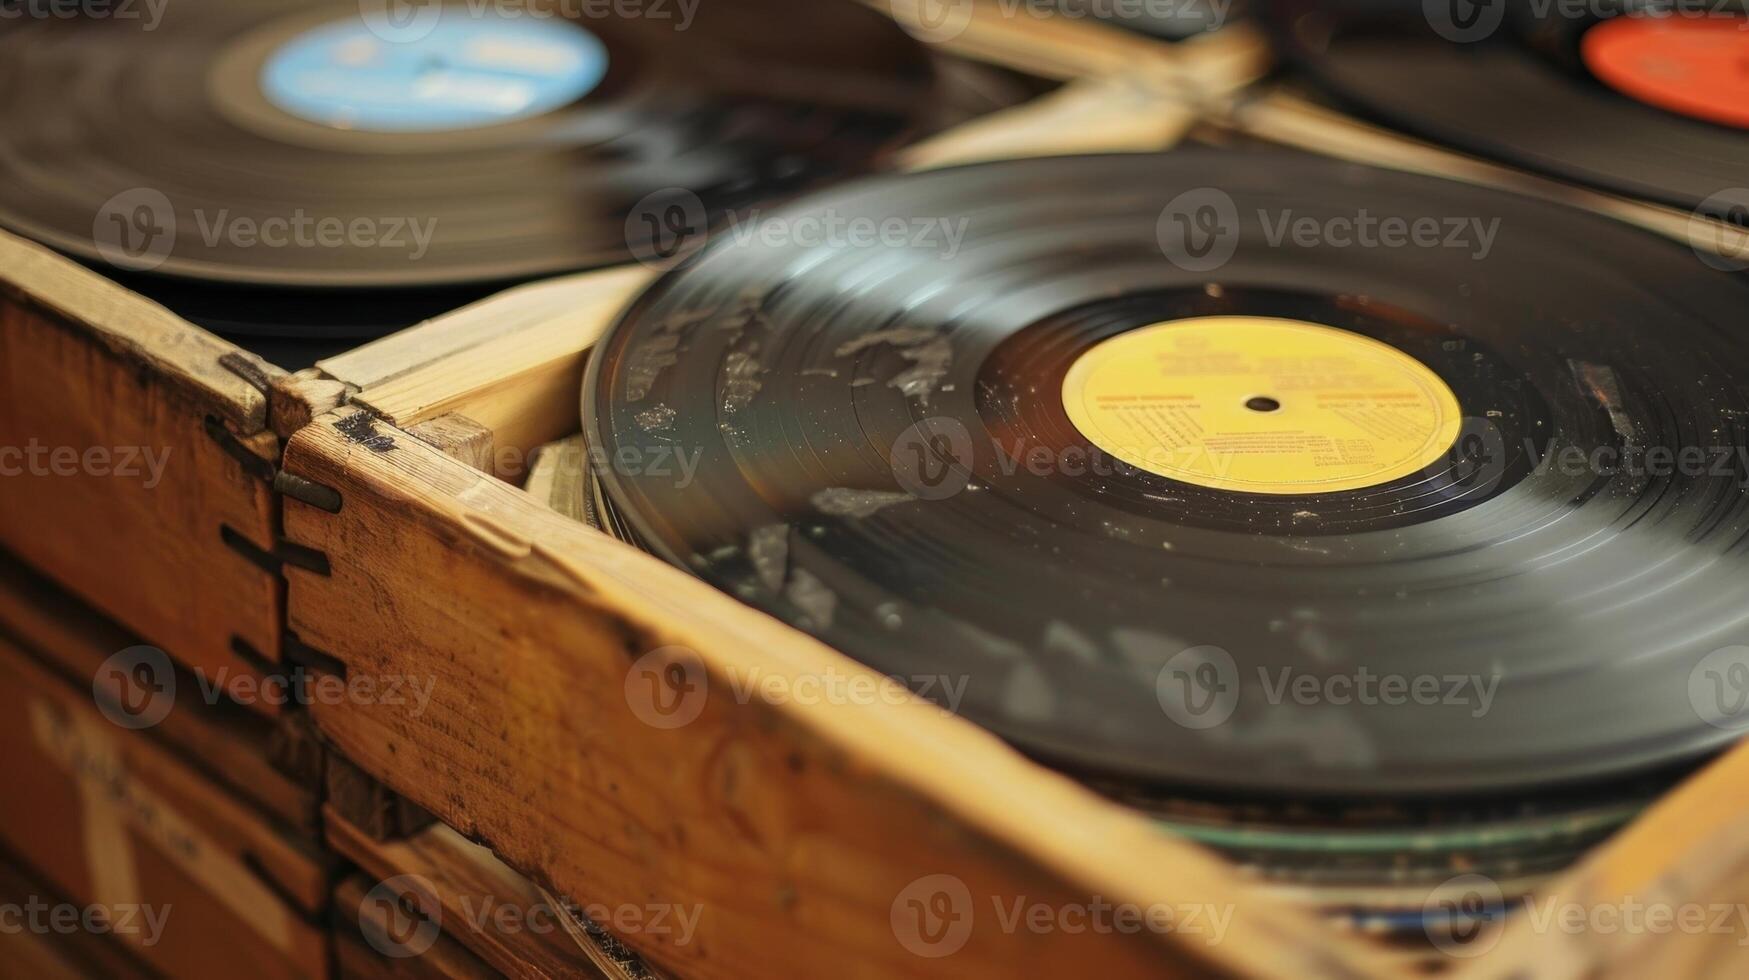 een krat vol van vinyl records vertegenwoordigen een levenslang van verzamelen en ontdekken nieuw muziek- foto